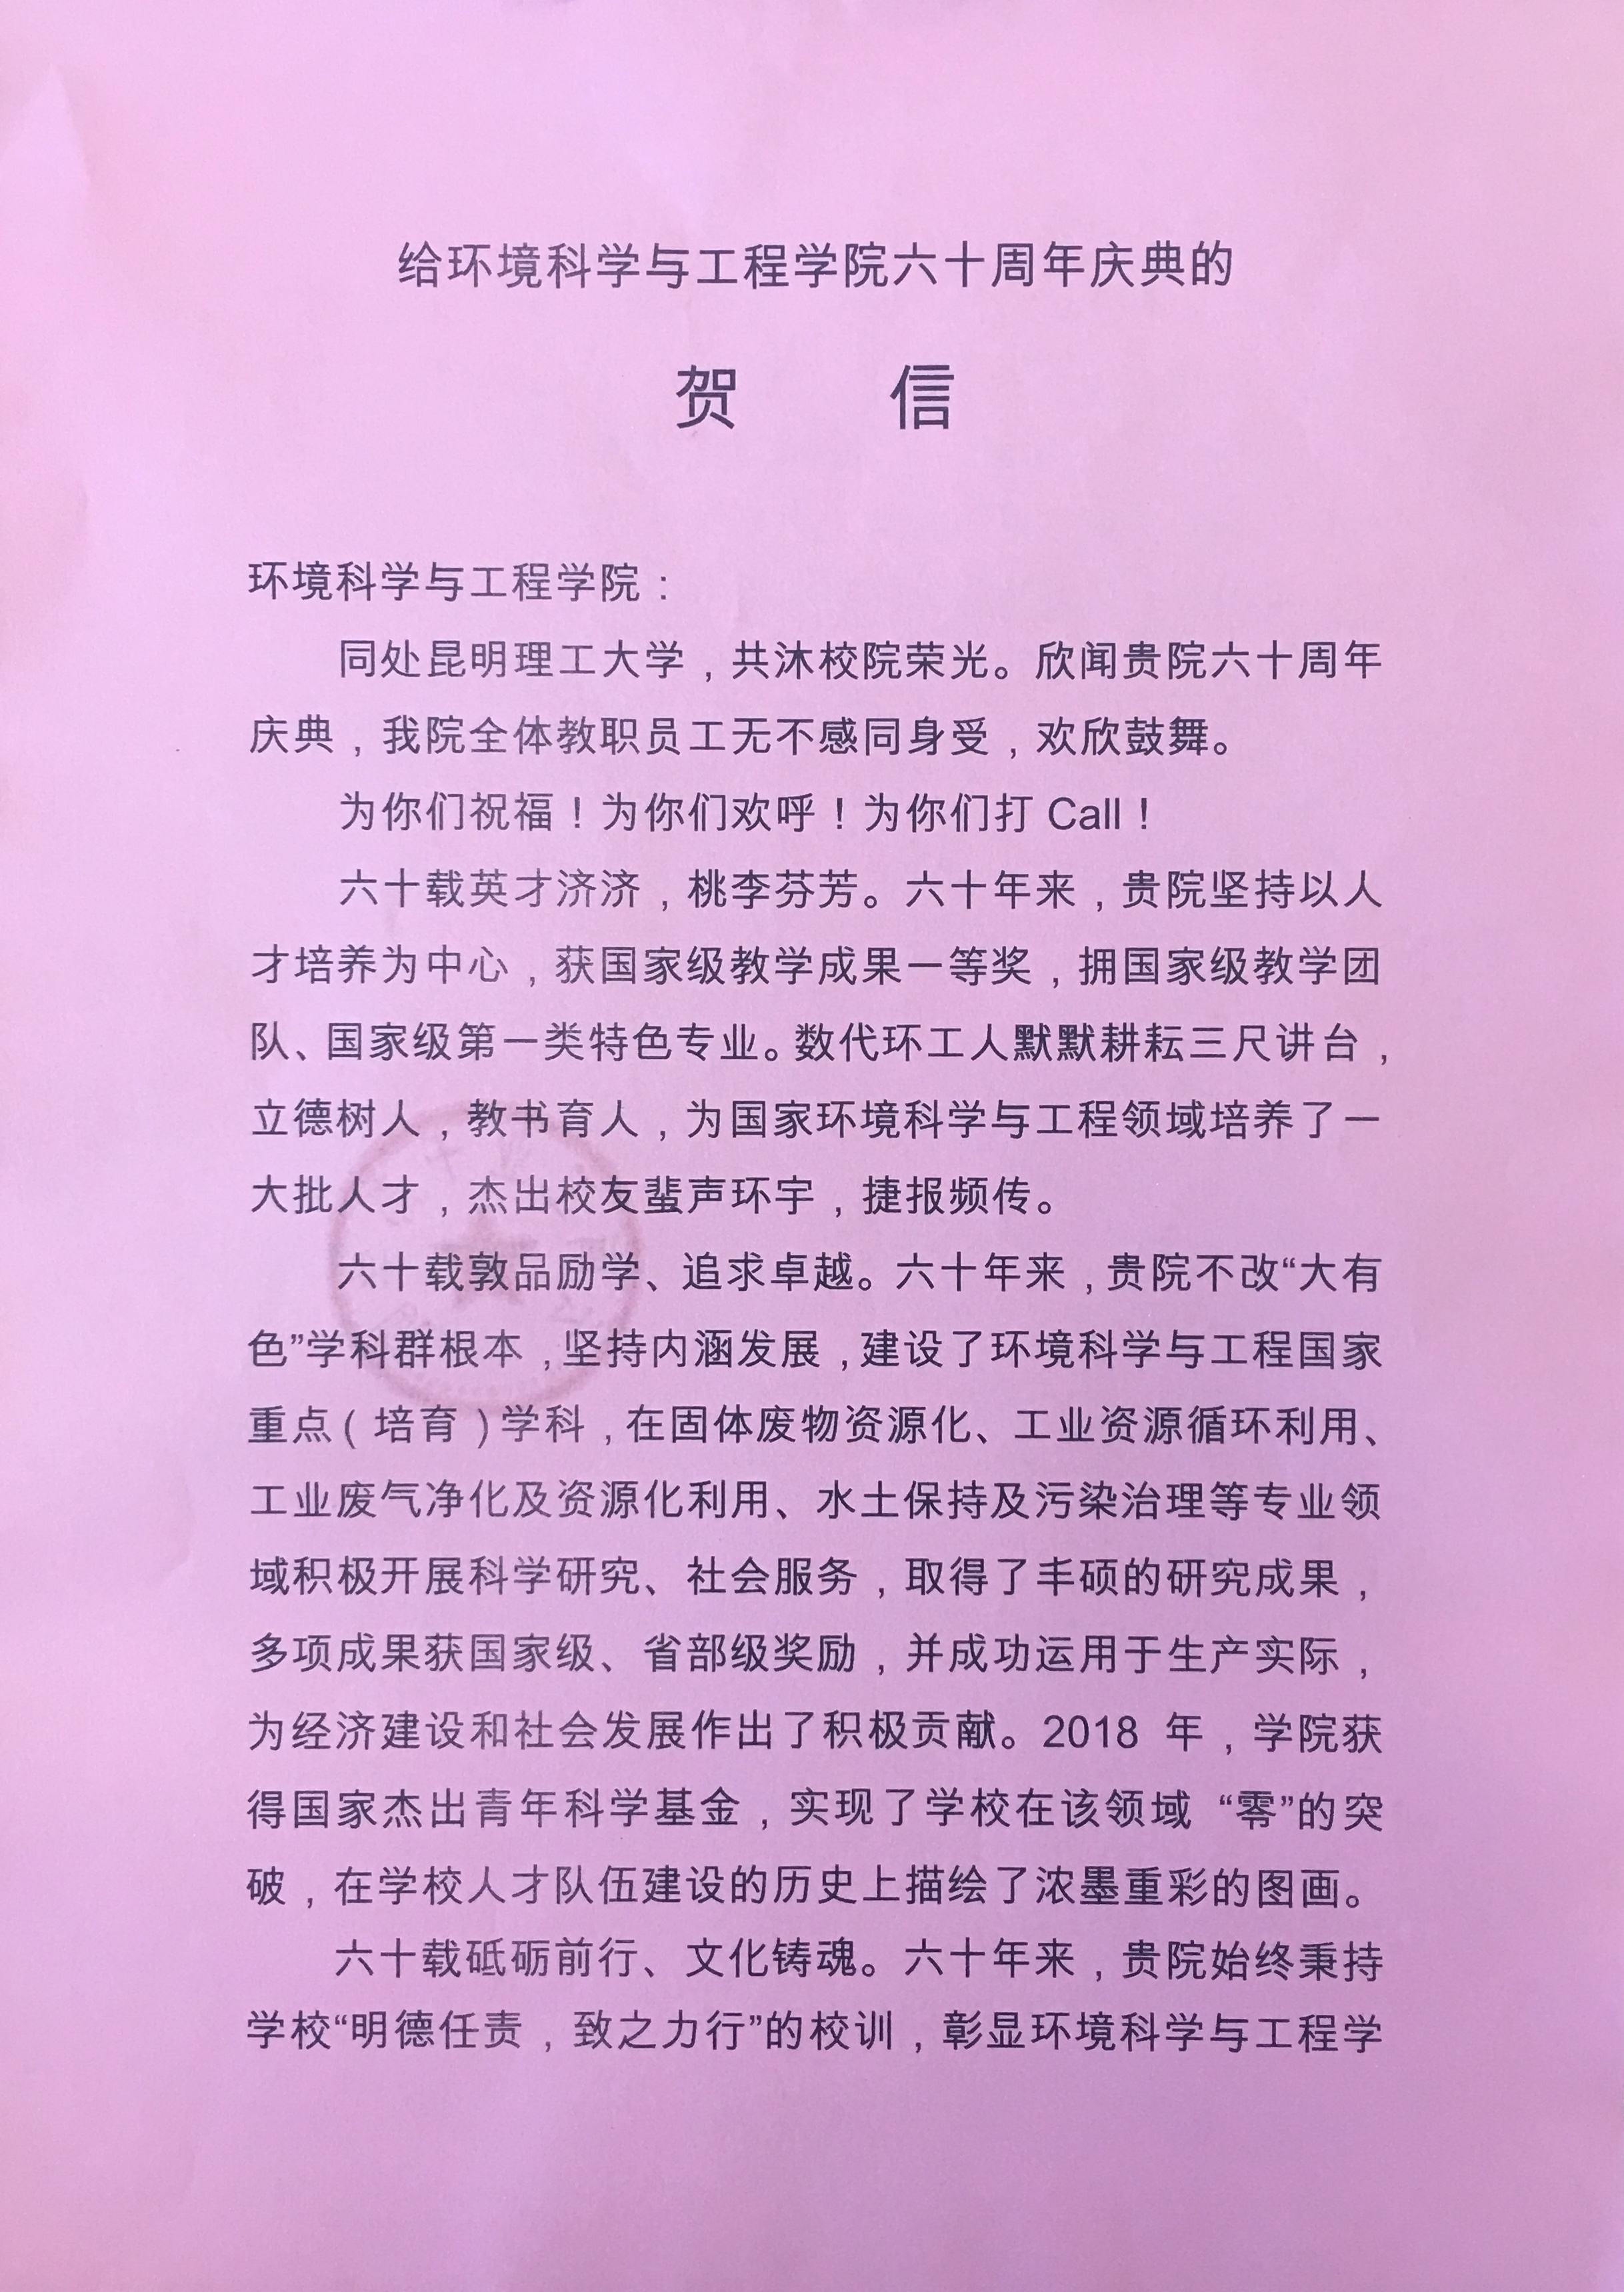 昆明理工大学云南工业干部学院向环境学院院庆60周年庆典发来贺信